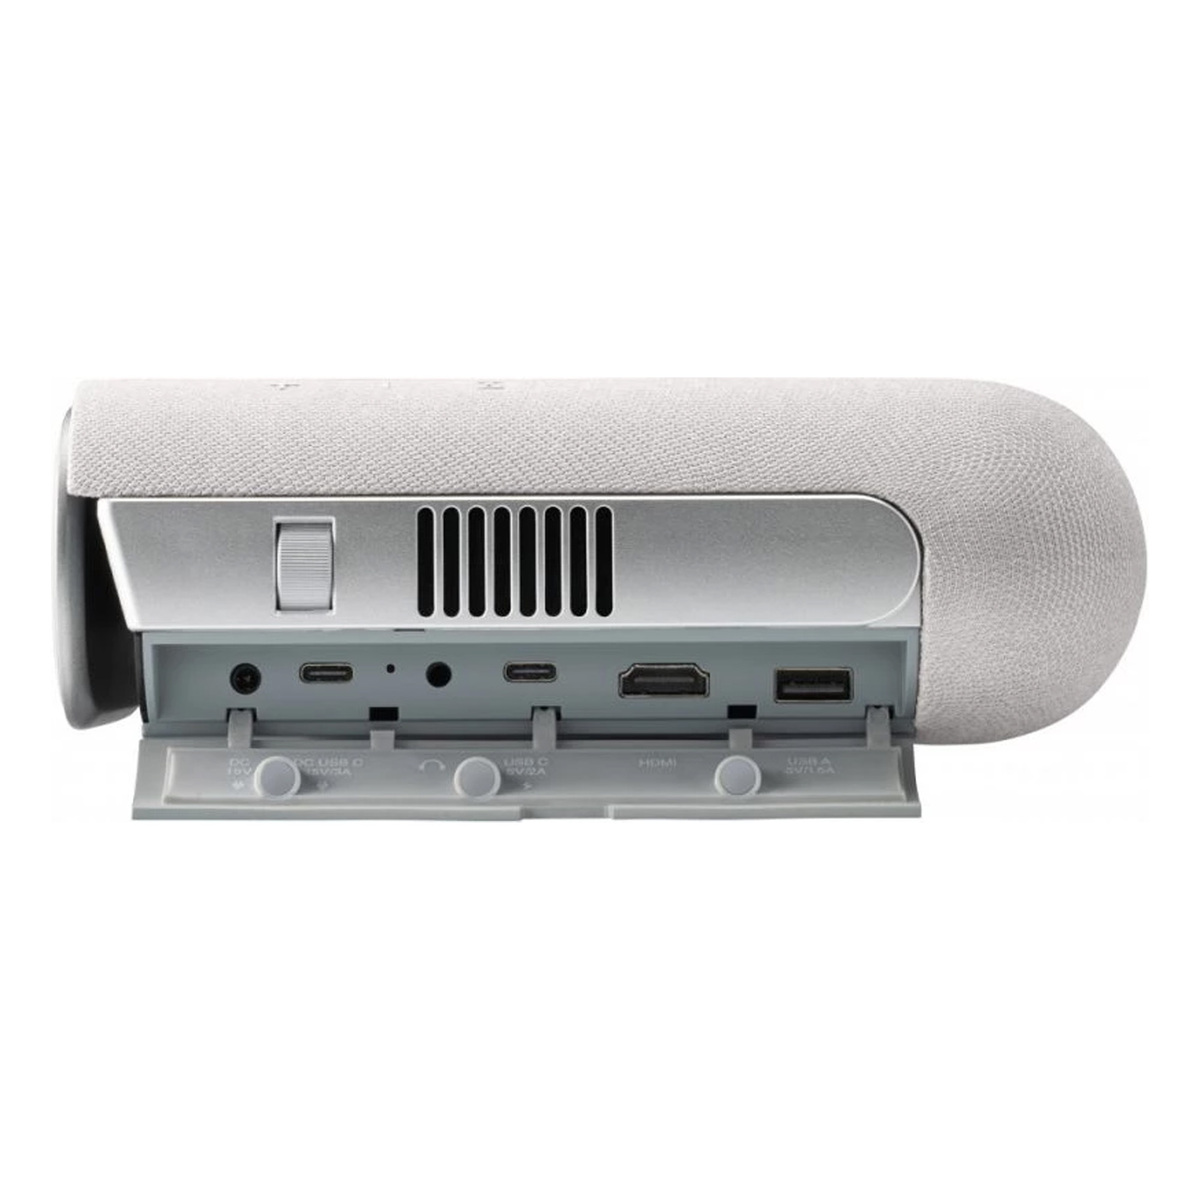 فيوسونيك جهاز عرض محمول M1 Pro الذكي إل إي دي، 1280 × 720 بكسل 600 لومن 150 بوصة مع سماعات هارمان كاردون باللون الرمادي